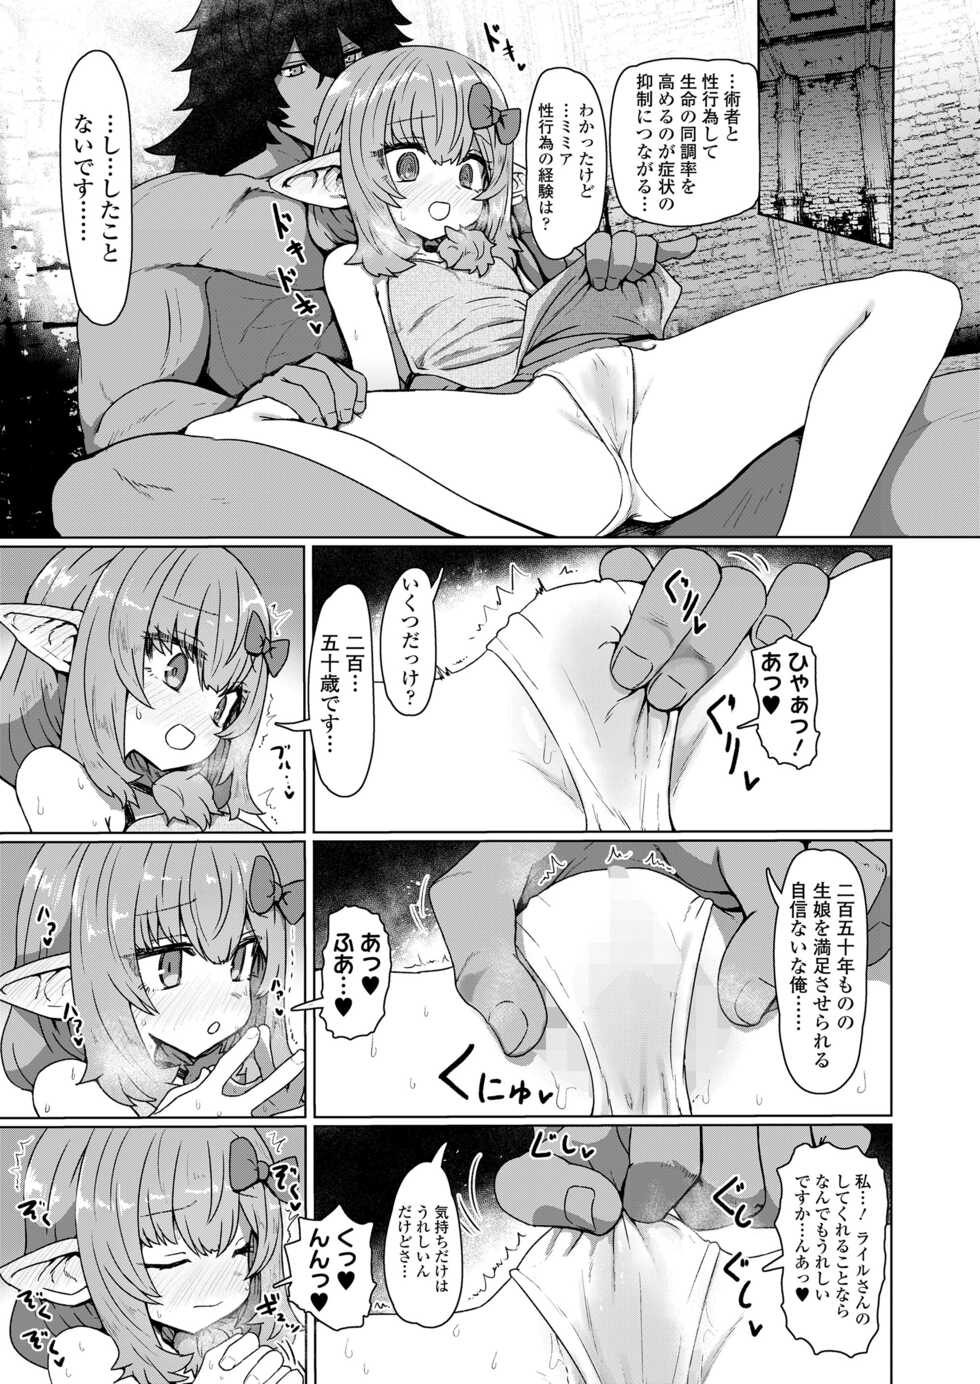 Towako 13 [Digital] - Page 15